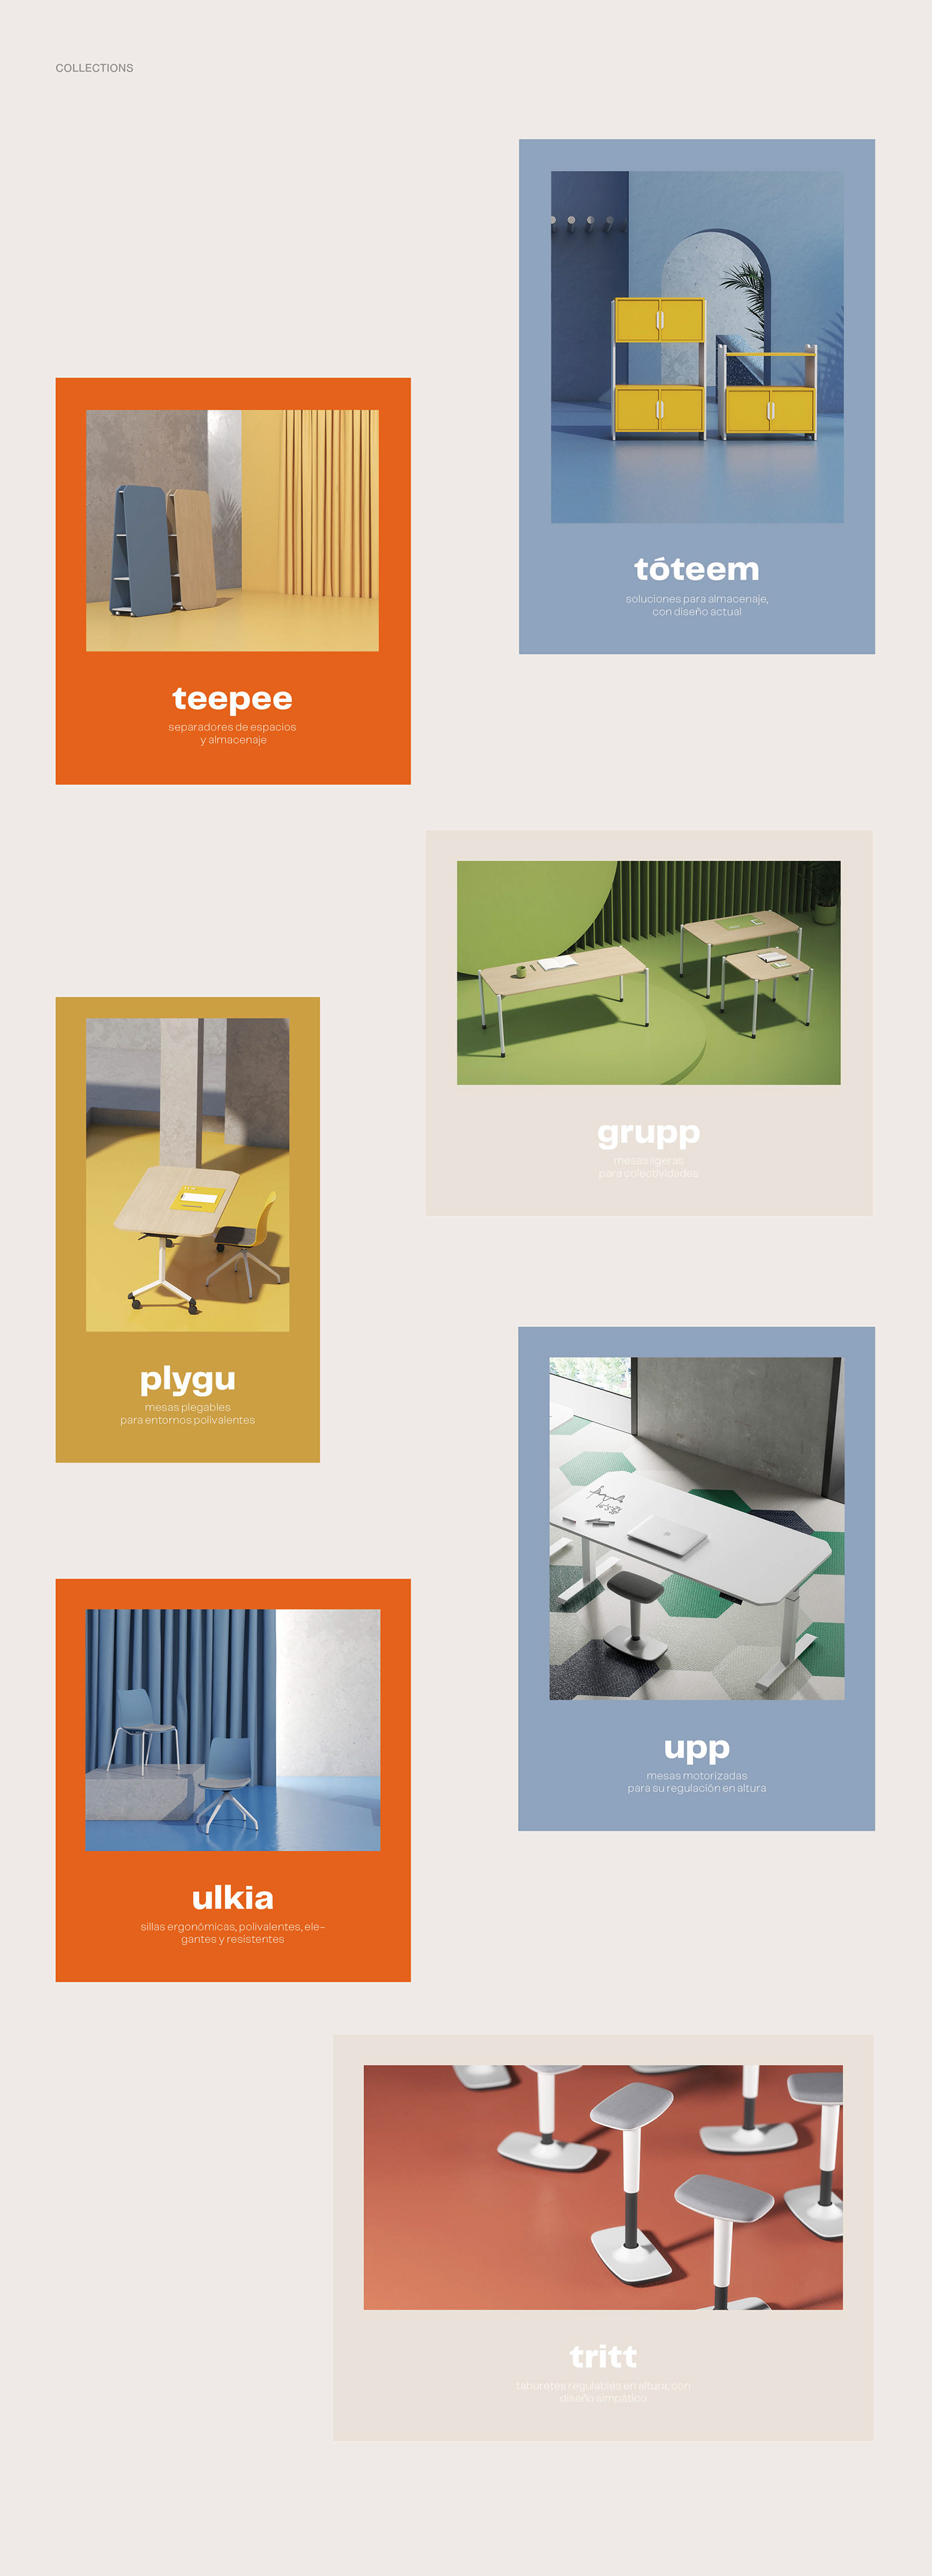 brand branding  design furniture furniture design  graphic design  interior design  mobiliario product product design 